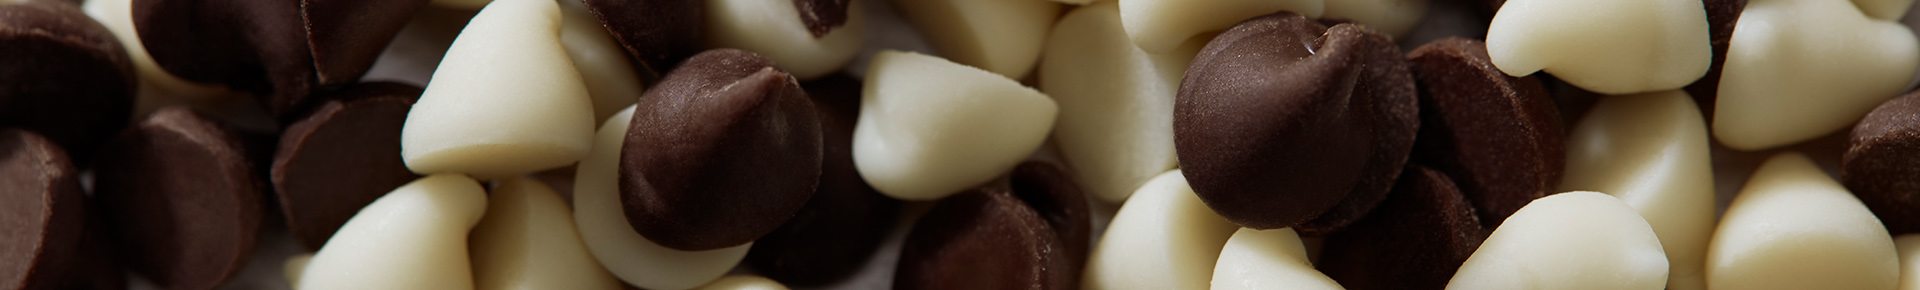 Gocce di cioccolato Perugina per decorare e arricchire i dolci.